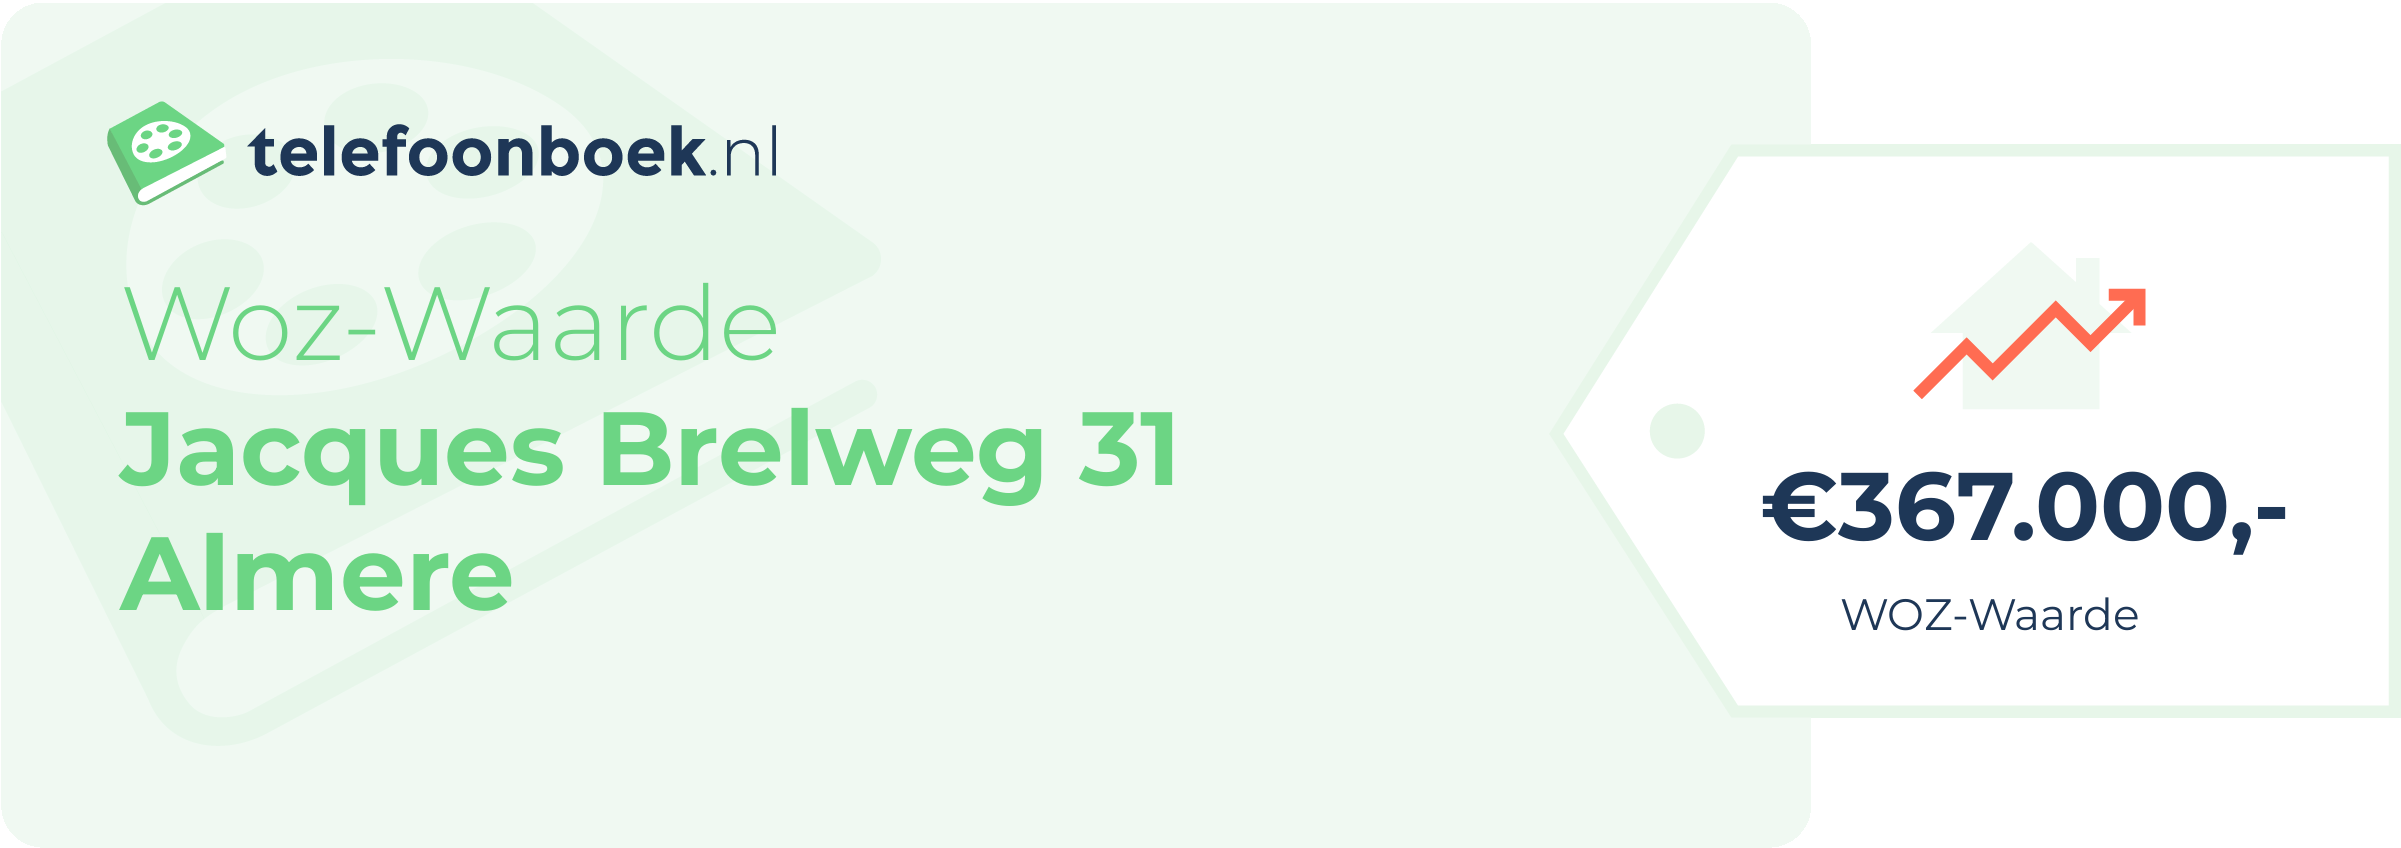 WOZ-waarde Jacques Brelweg 31 Almere